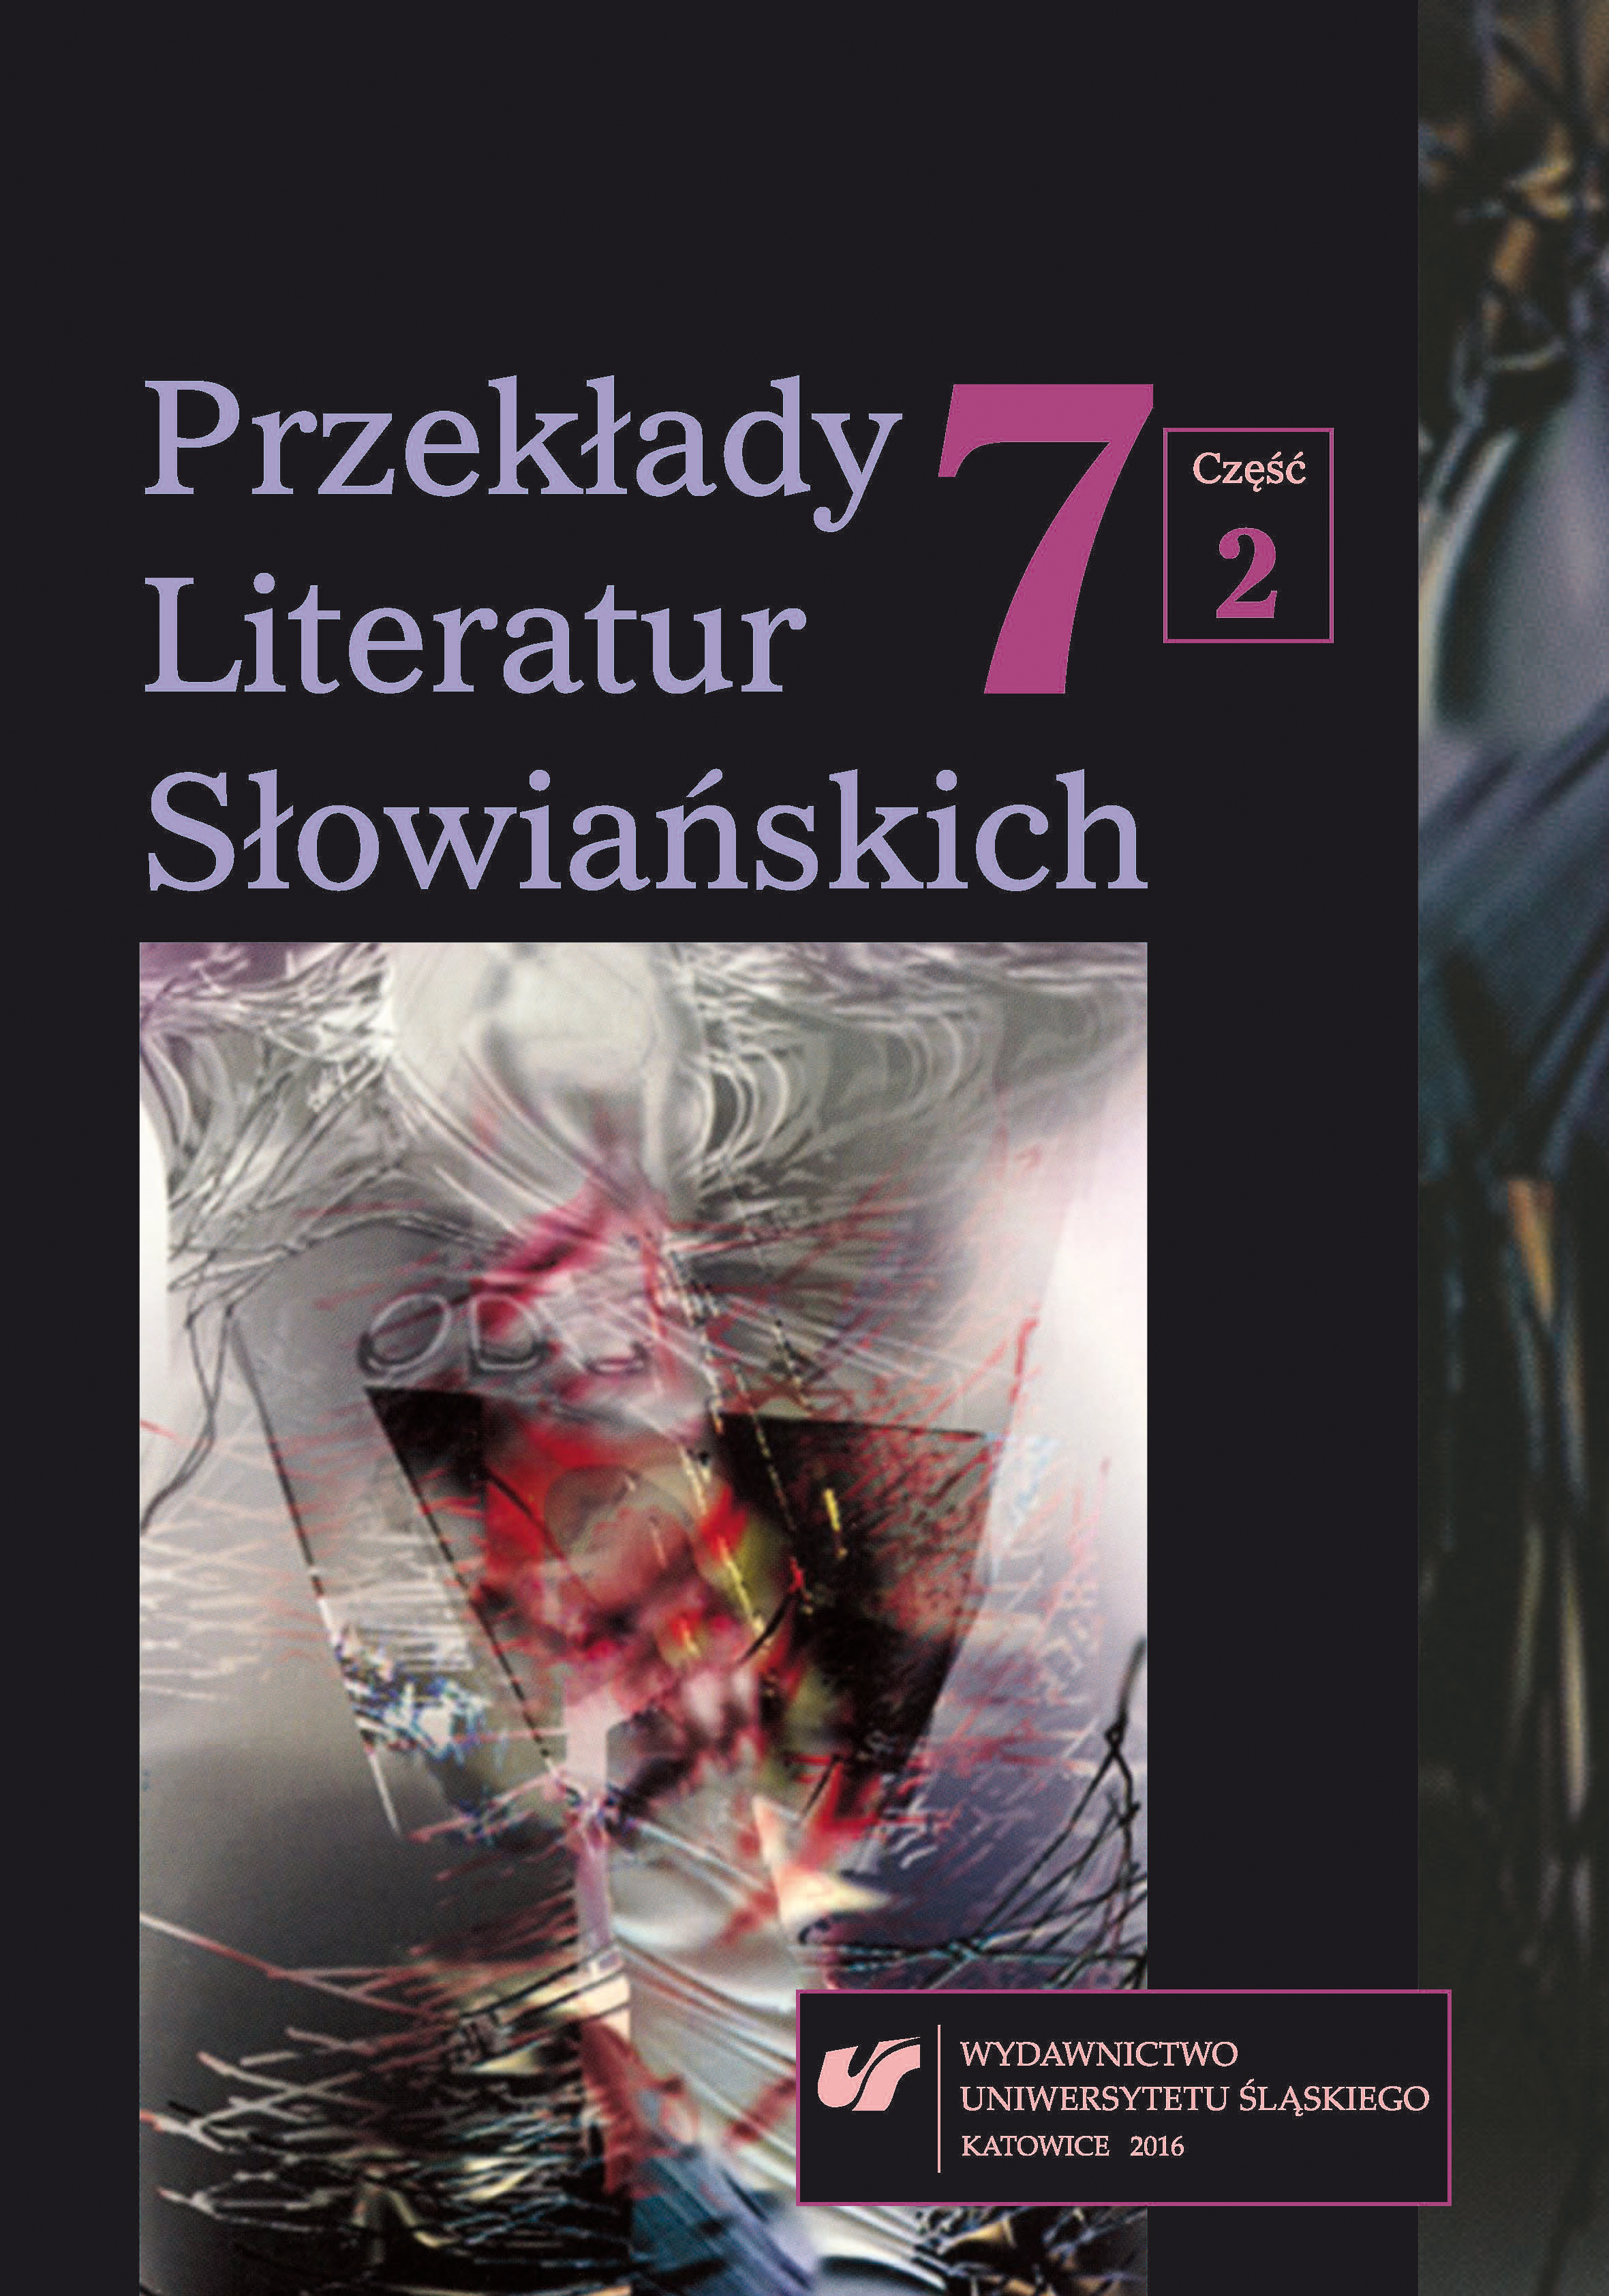 Bibliografia przekładów literatury polskiej w Bułgarii w 2014 roku